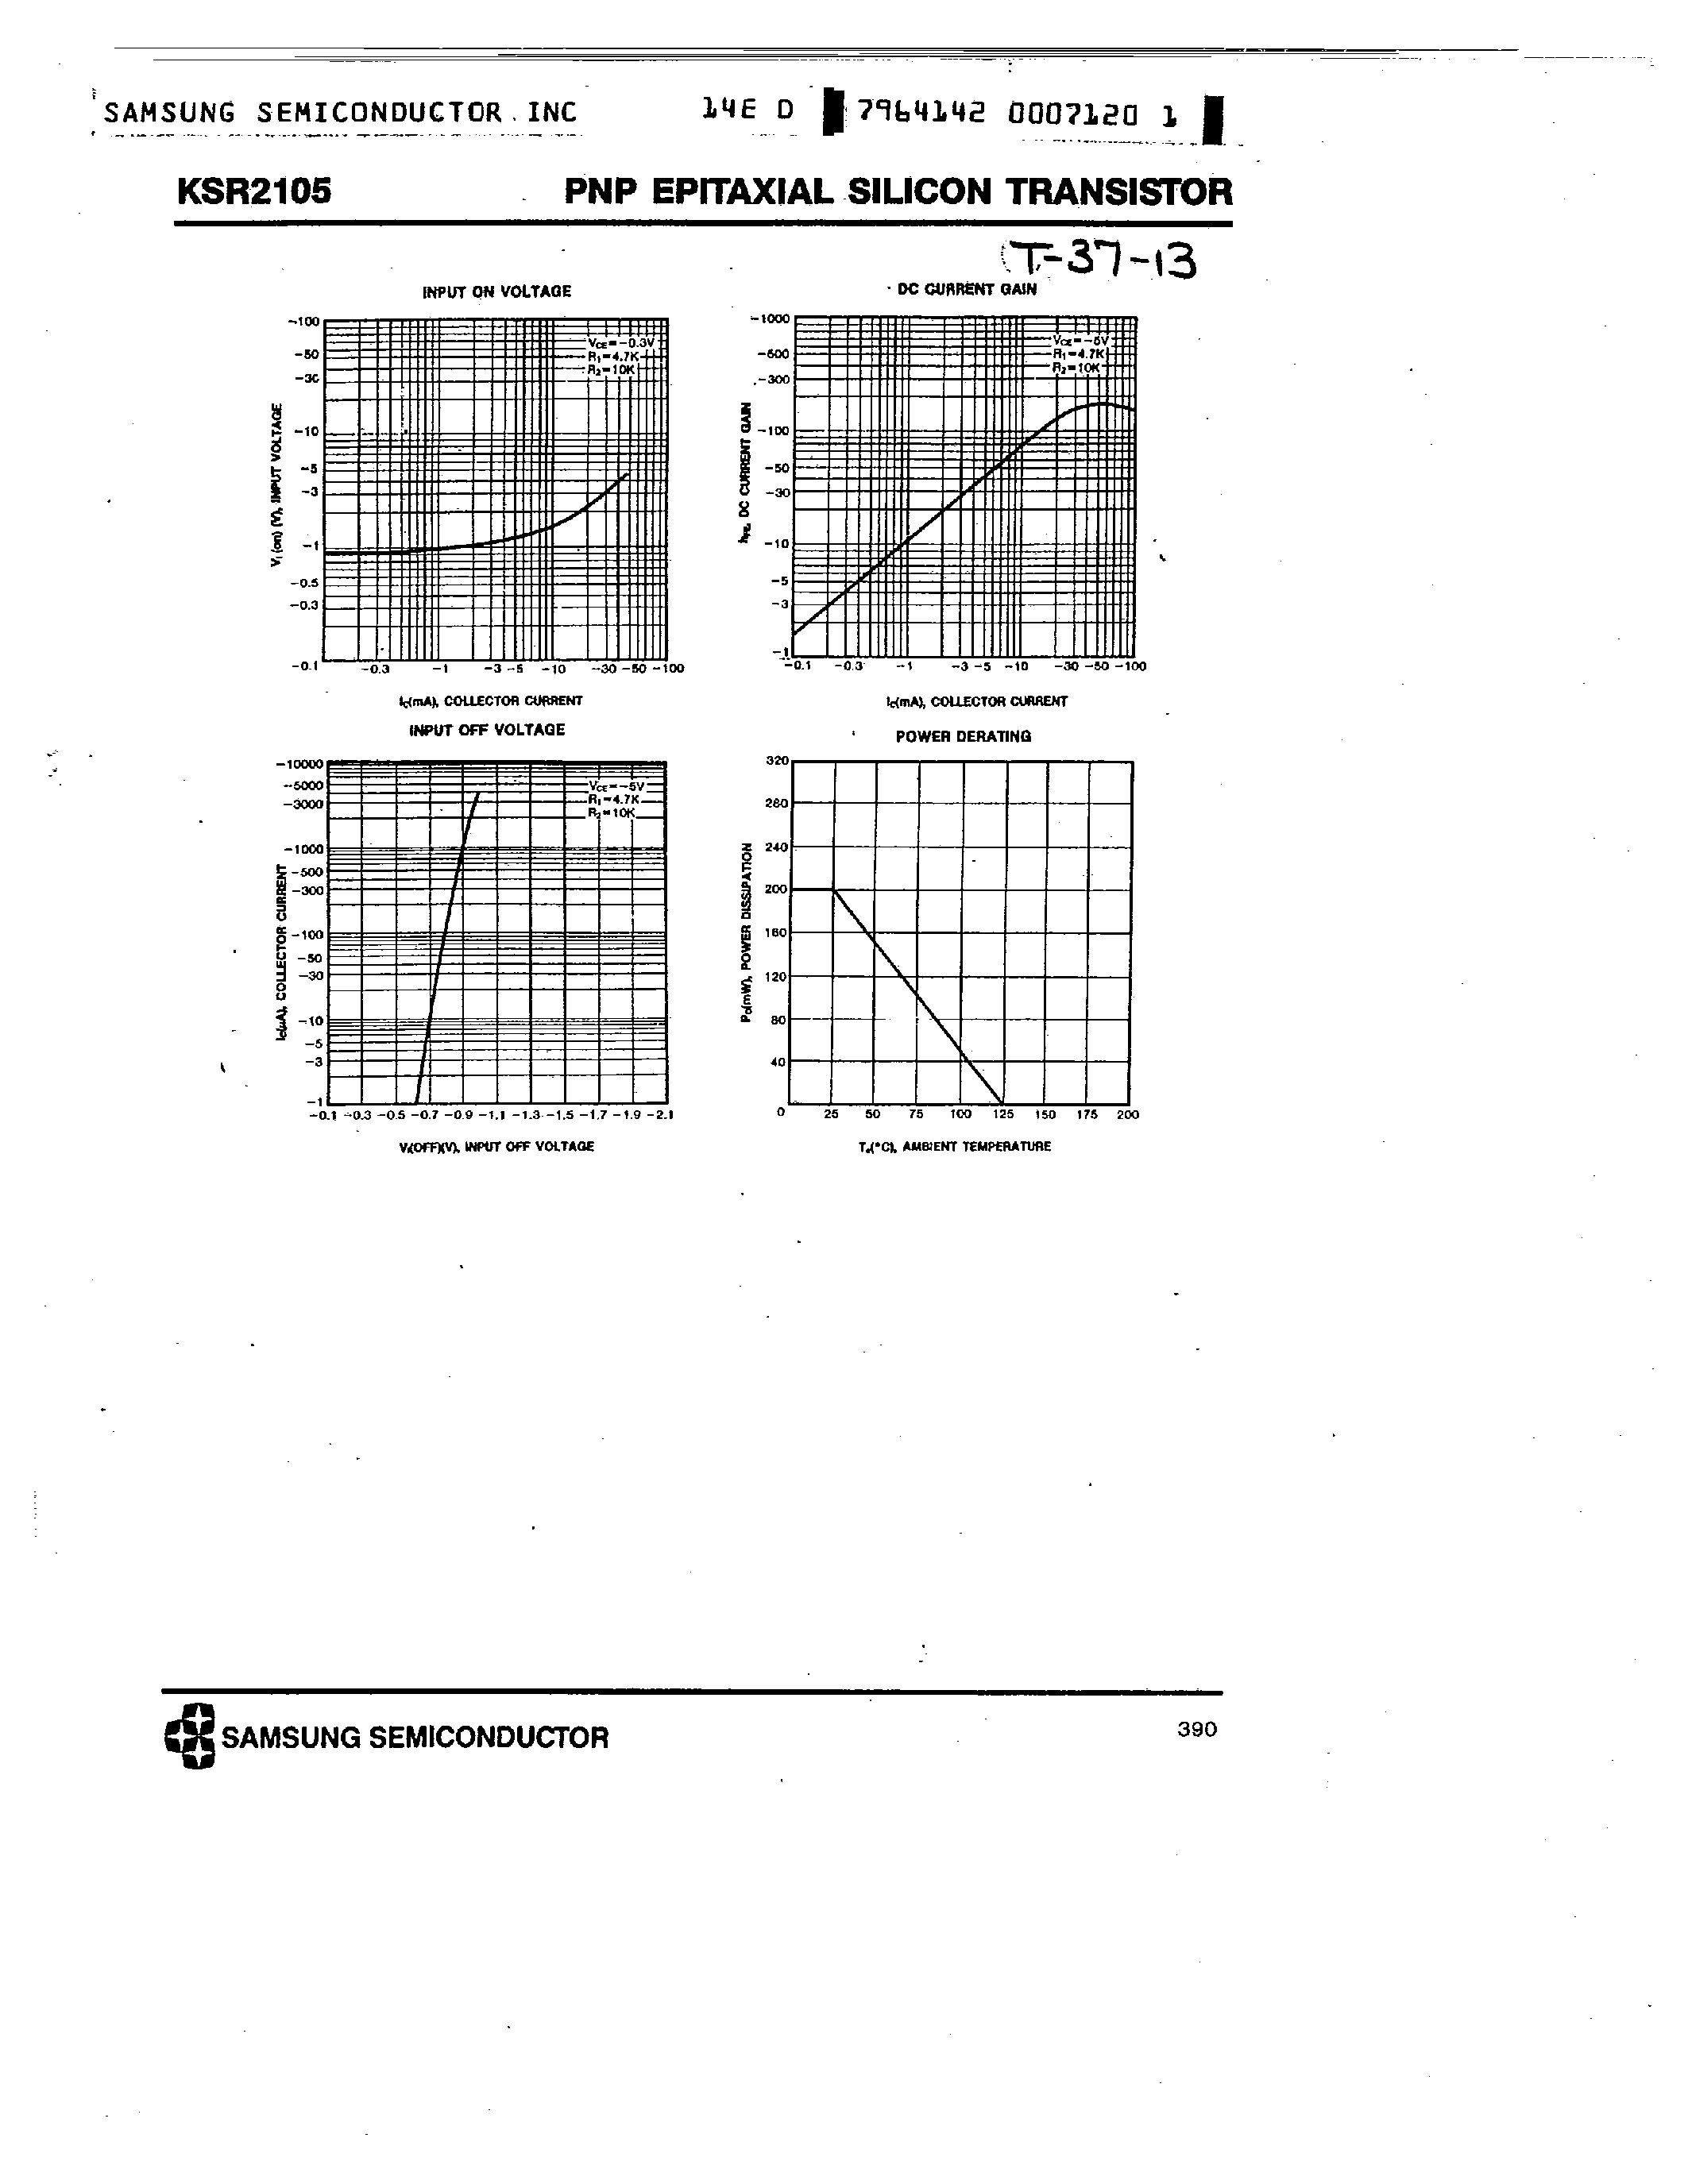 Datasheet KSR2105 - PNP (SWITCHING APPLICATION) page 2